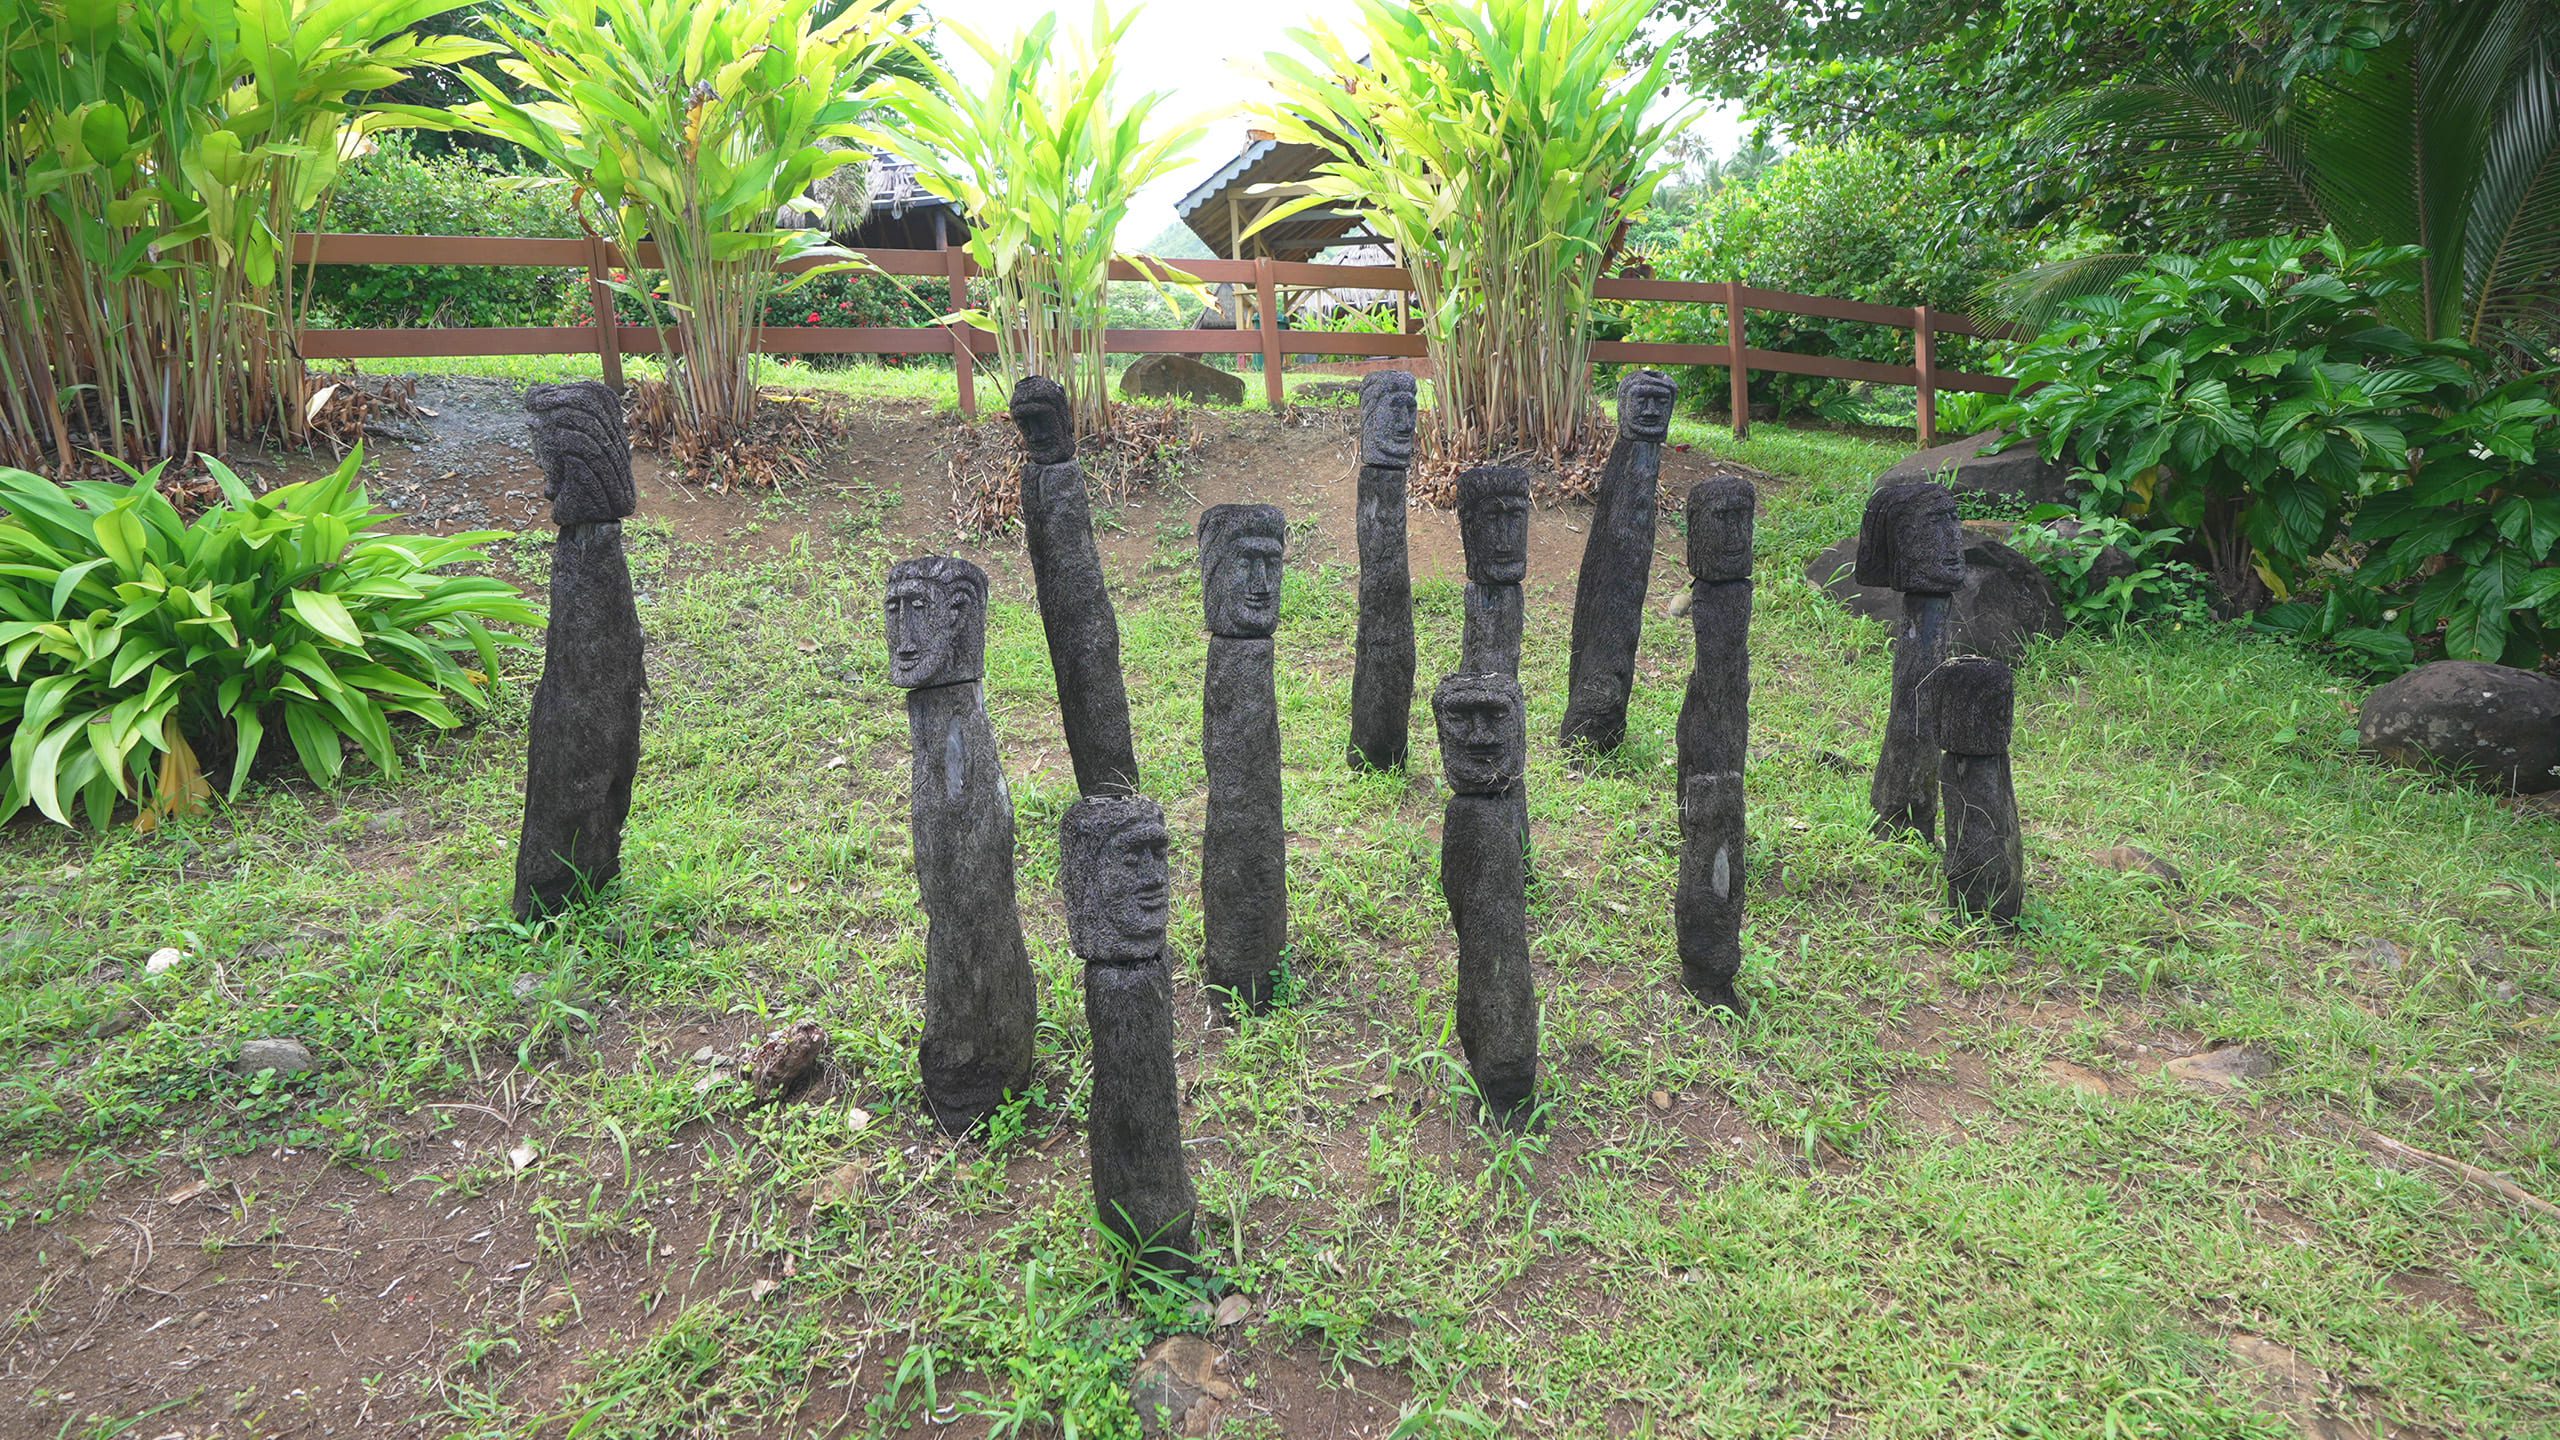 Tribal totems in Dominica | Davidsbeenhere